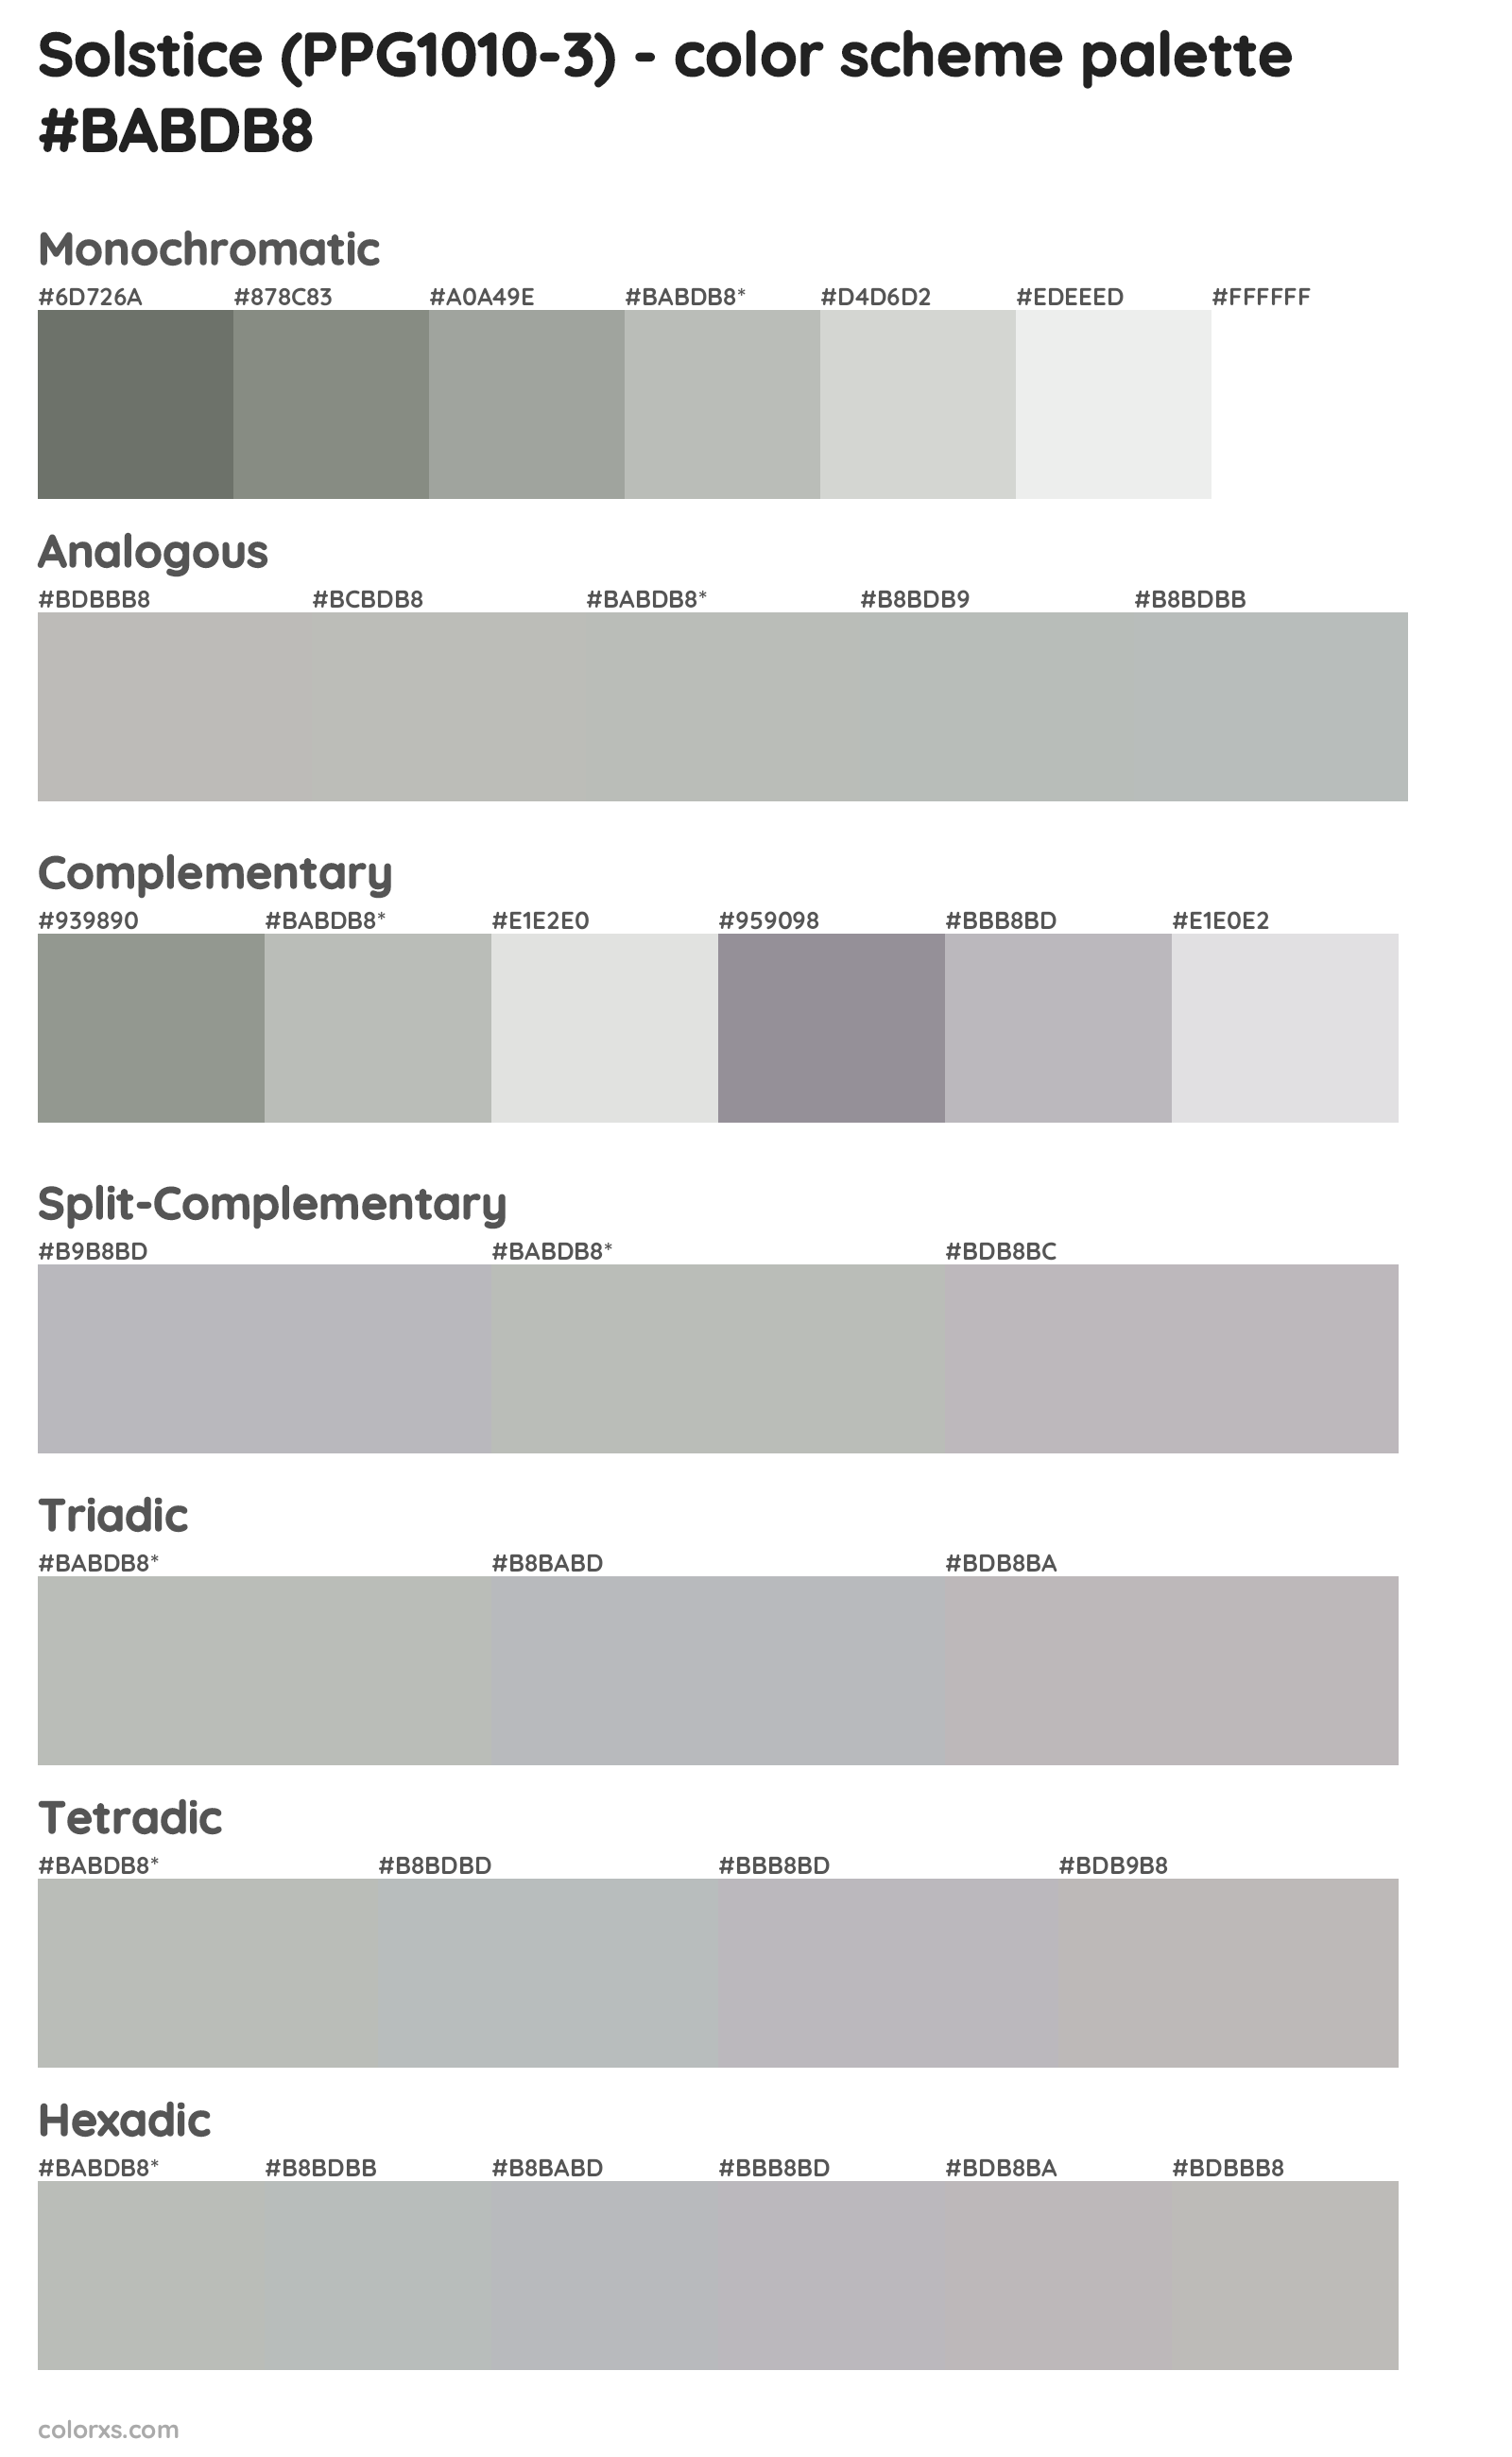 Solstice (PPG1010-3) Color Scheme Palettes